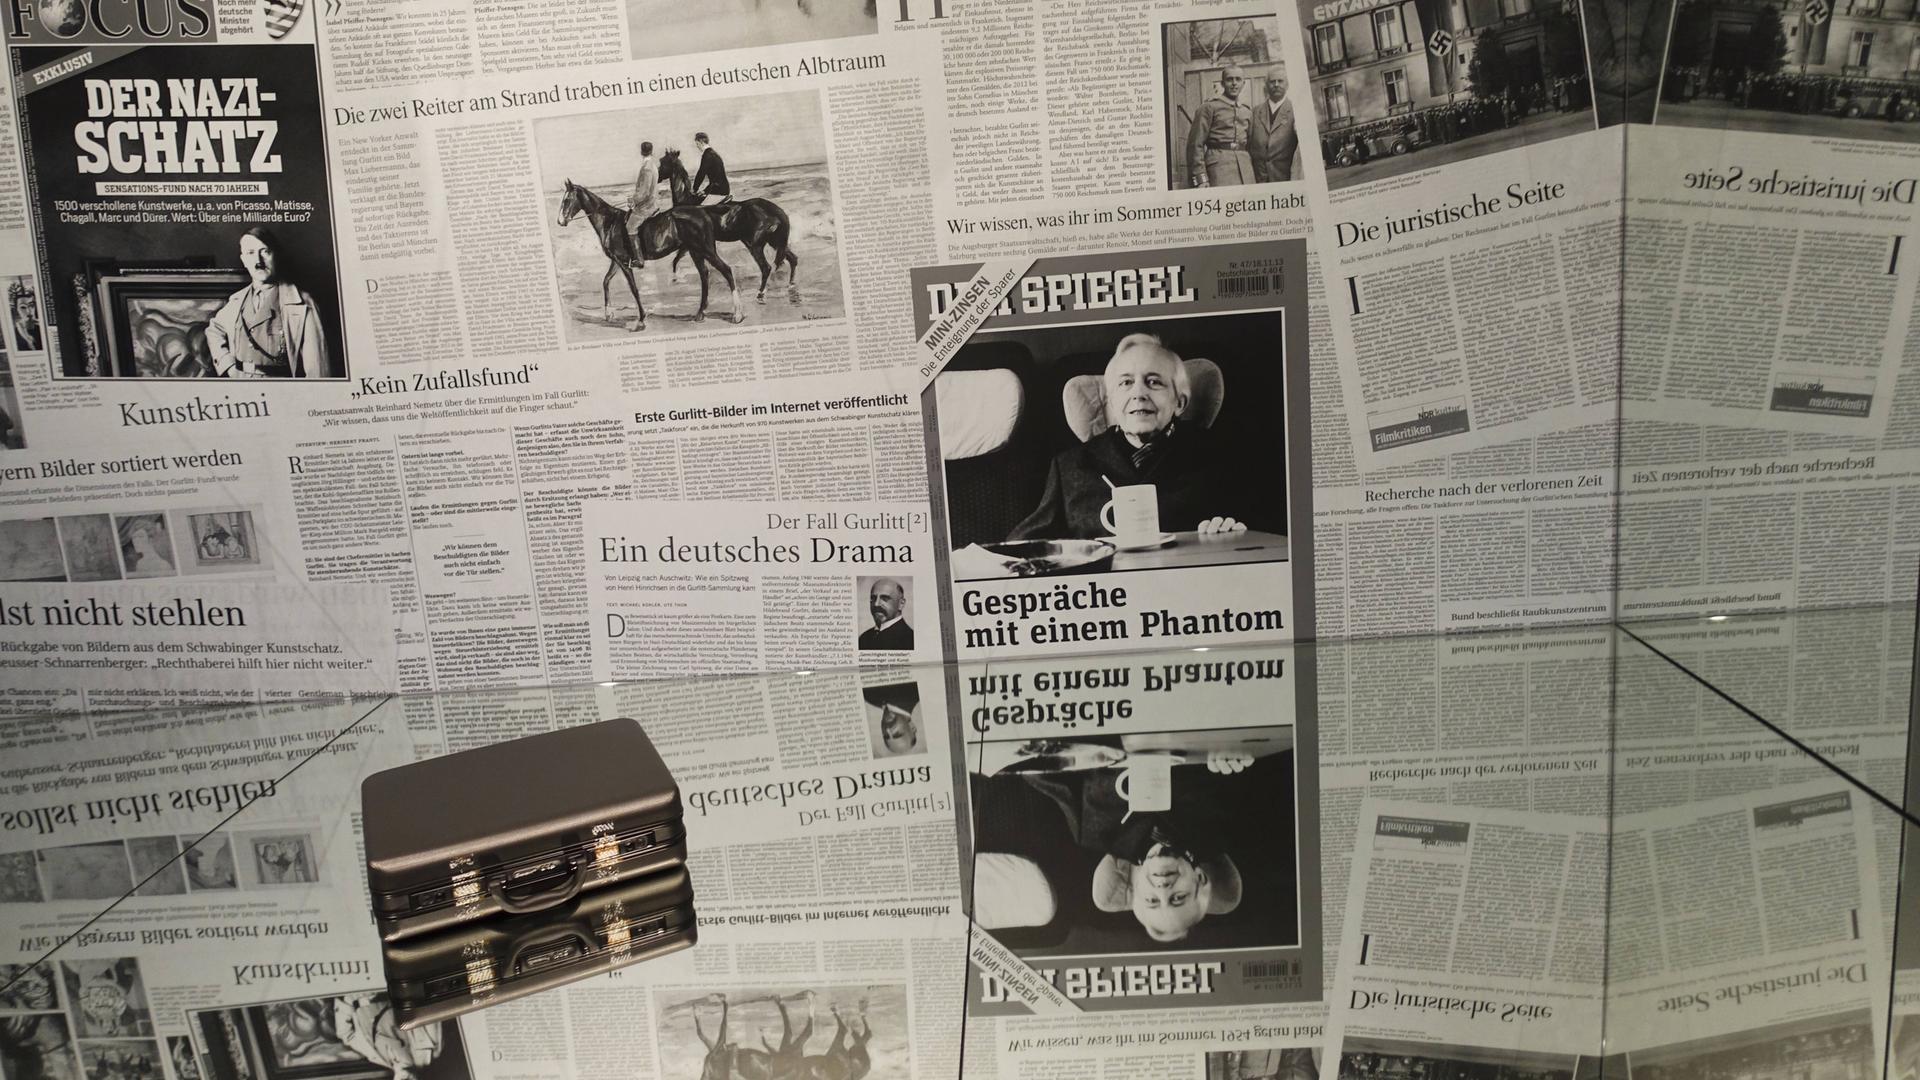 Das Bild zeigt eine Collage aus Zeitungsberichten und einen Original-Koffer Gurlitts aus der Ausstellung "Bestandsaufnahme Gurlitt" im Gropius-Bau von 2018. 